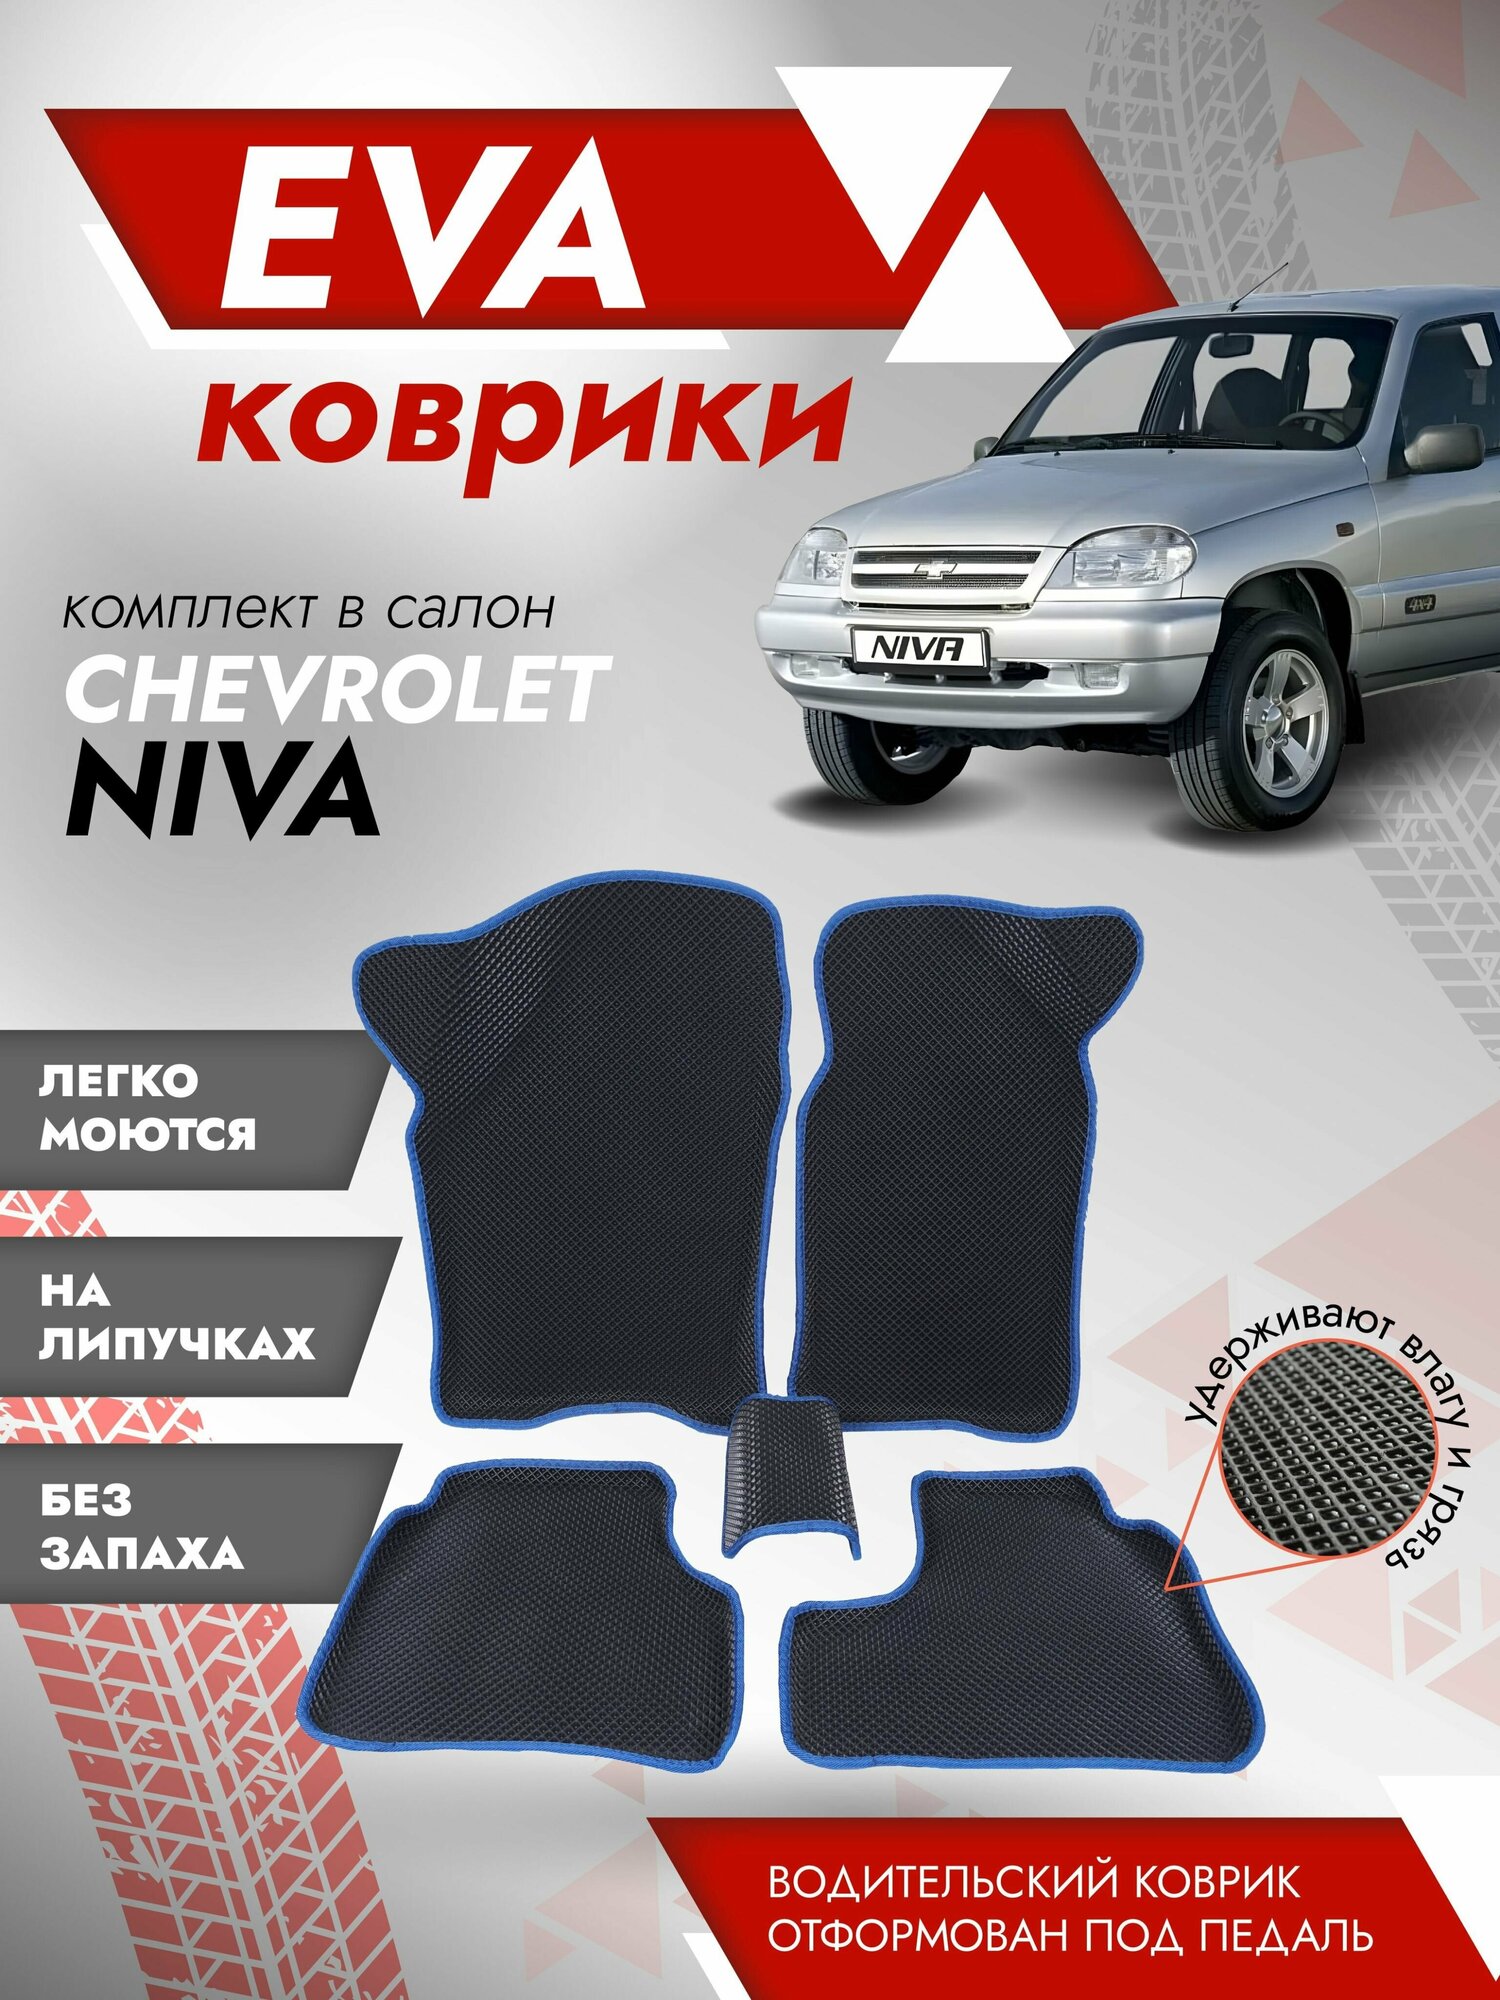 Ева ковры 2123, Нива Шевроле "3Д" (коврики Chevrolet Niva "3D") / синий кант